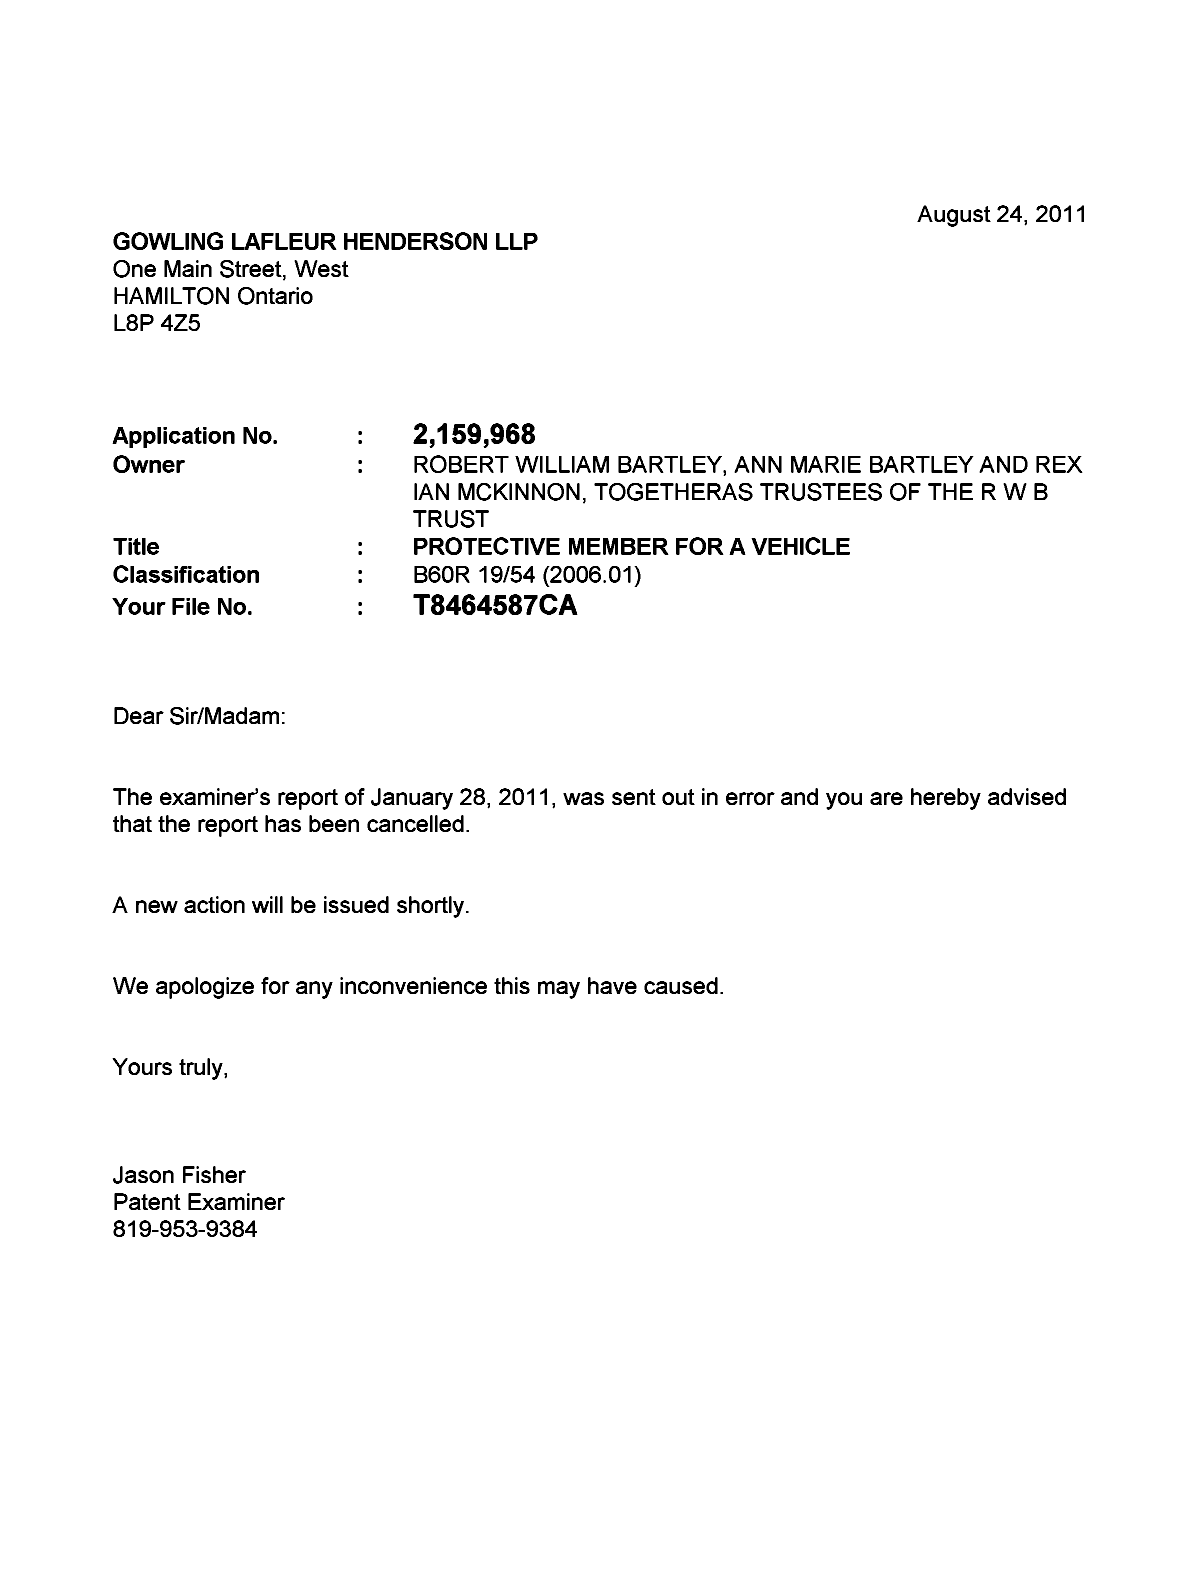 Document de brevet canadien 2159968. Correspondance 20110824. Image 1 de 1